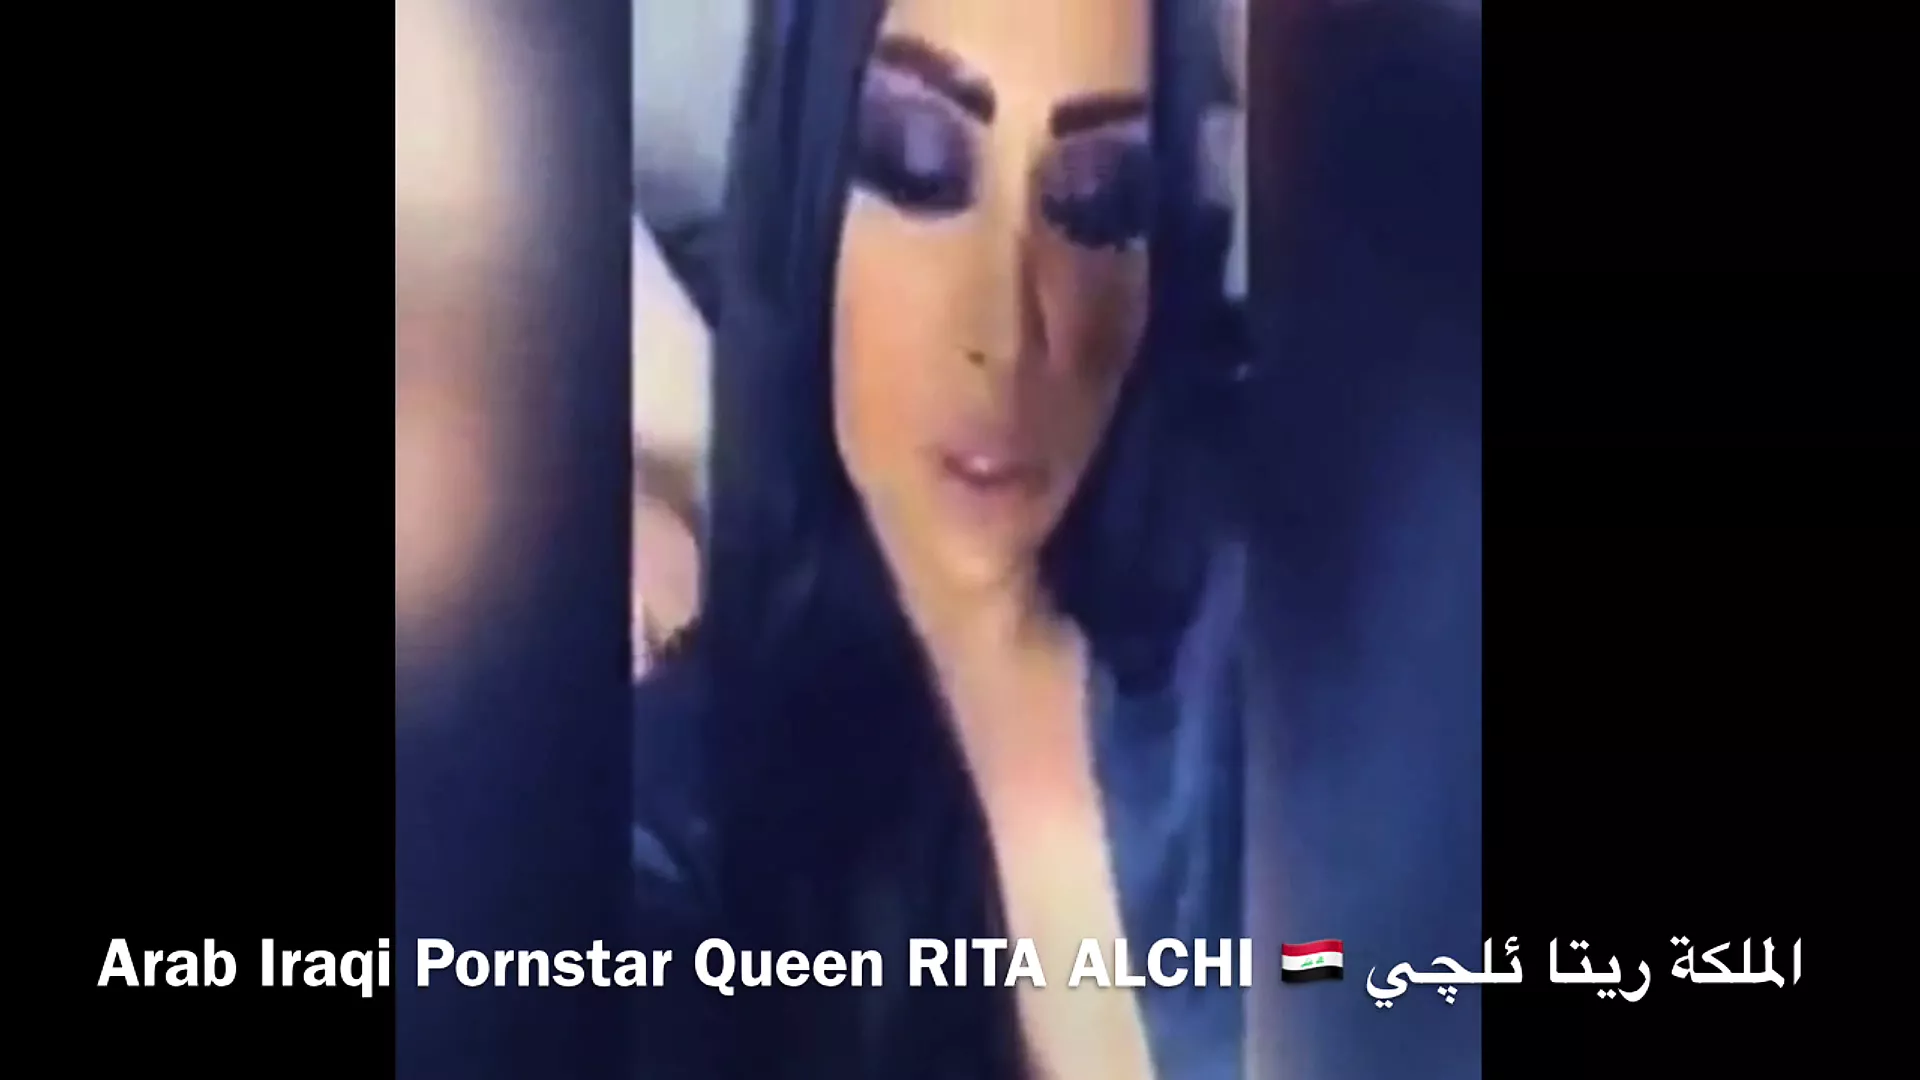 Arab Iraqi Porn star RITA ALCHI Sex Mission In Hotel image pic